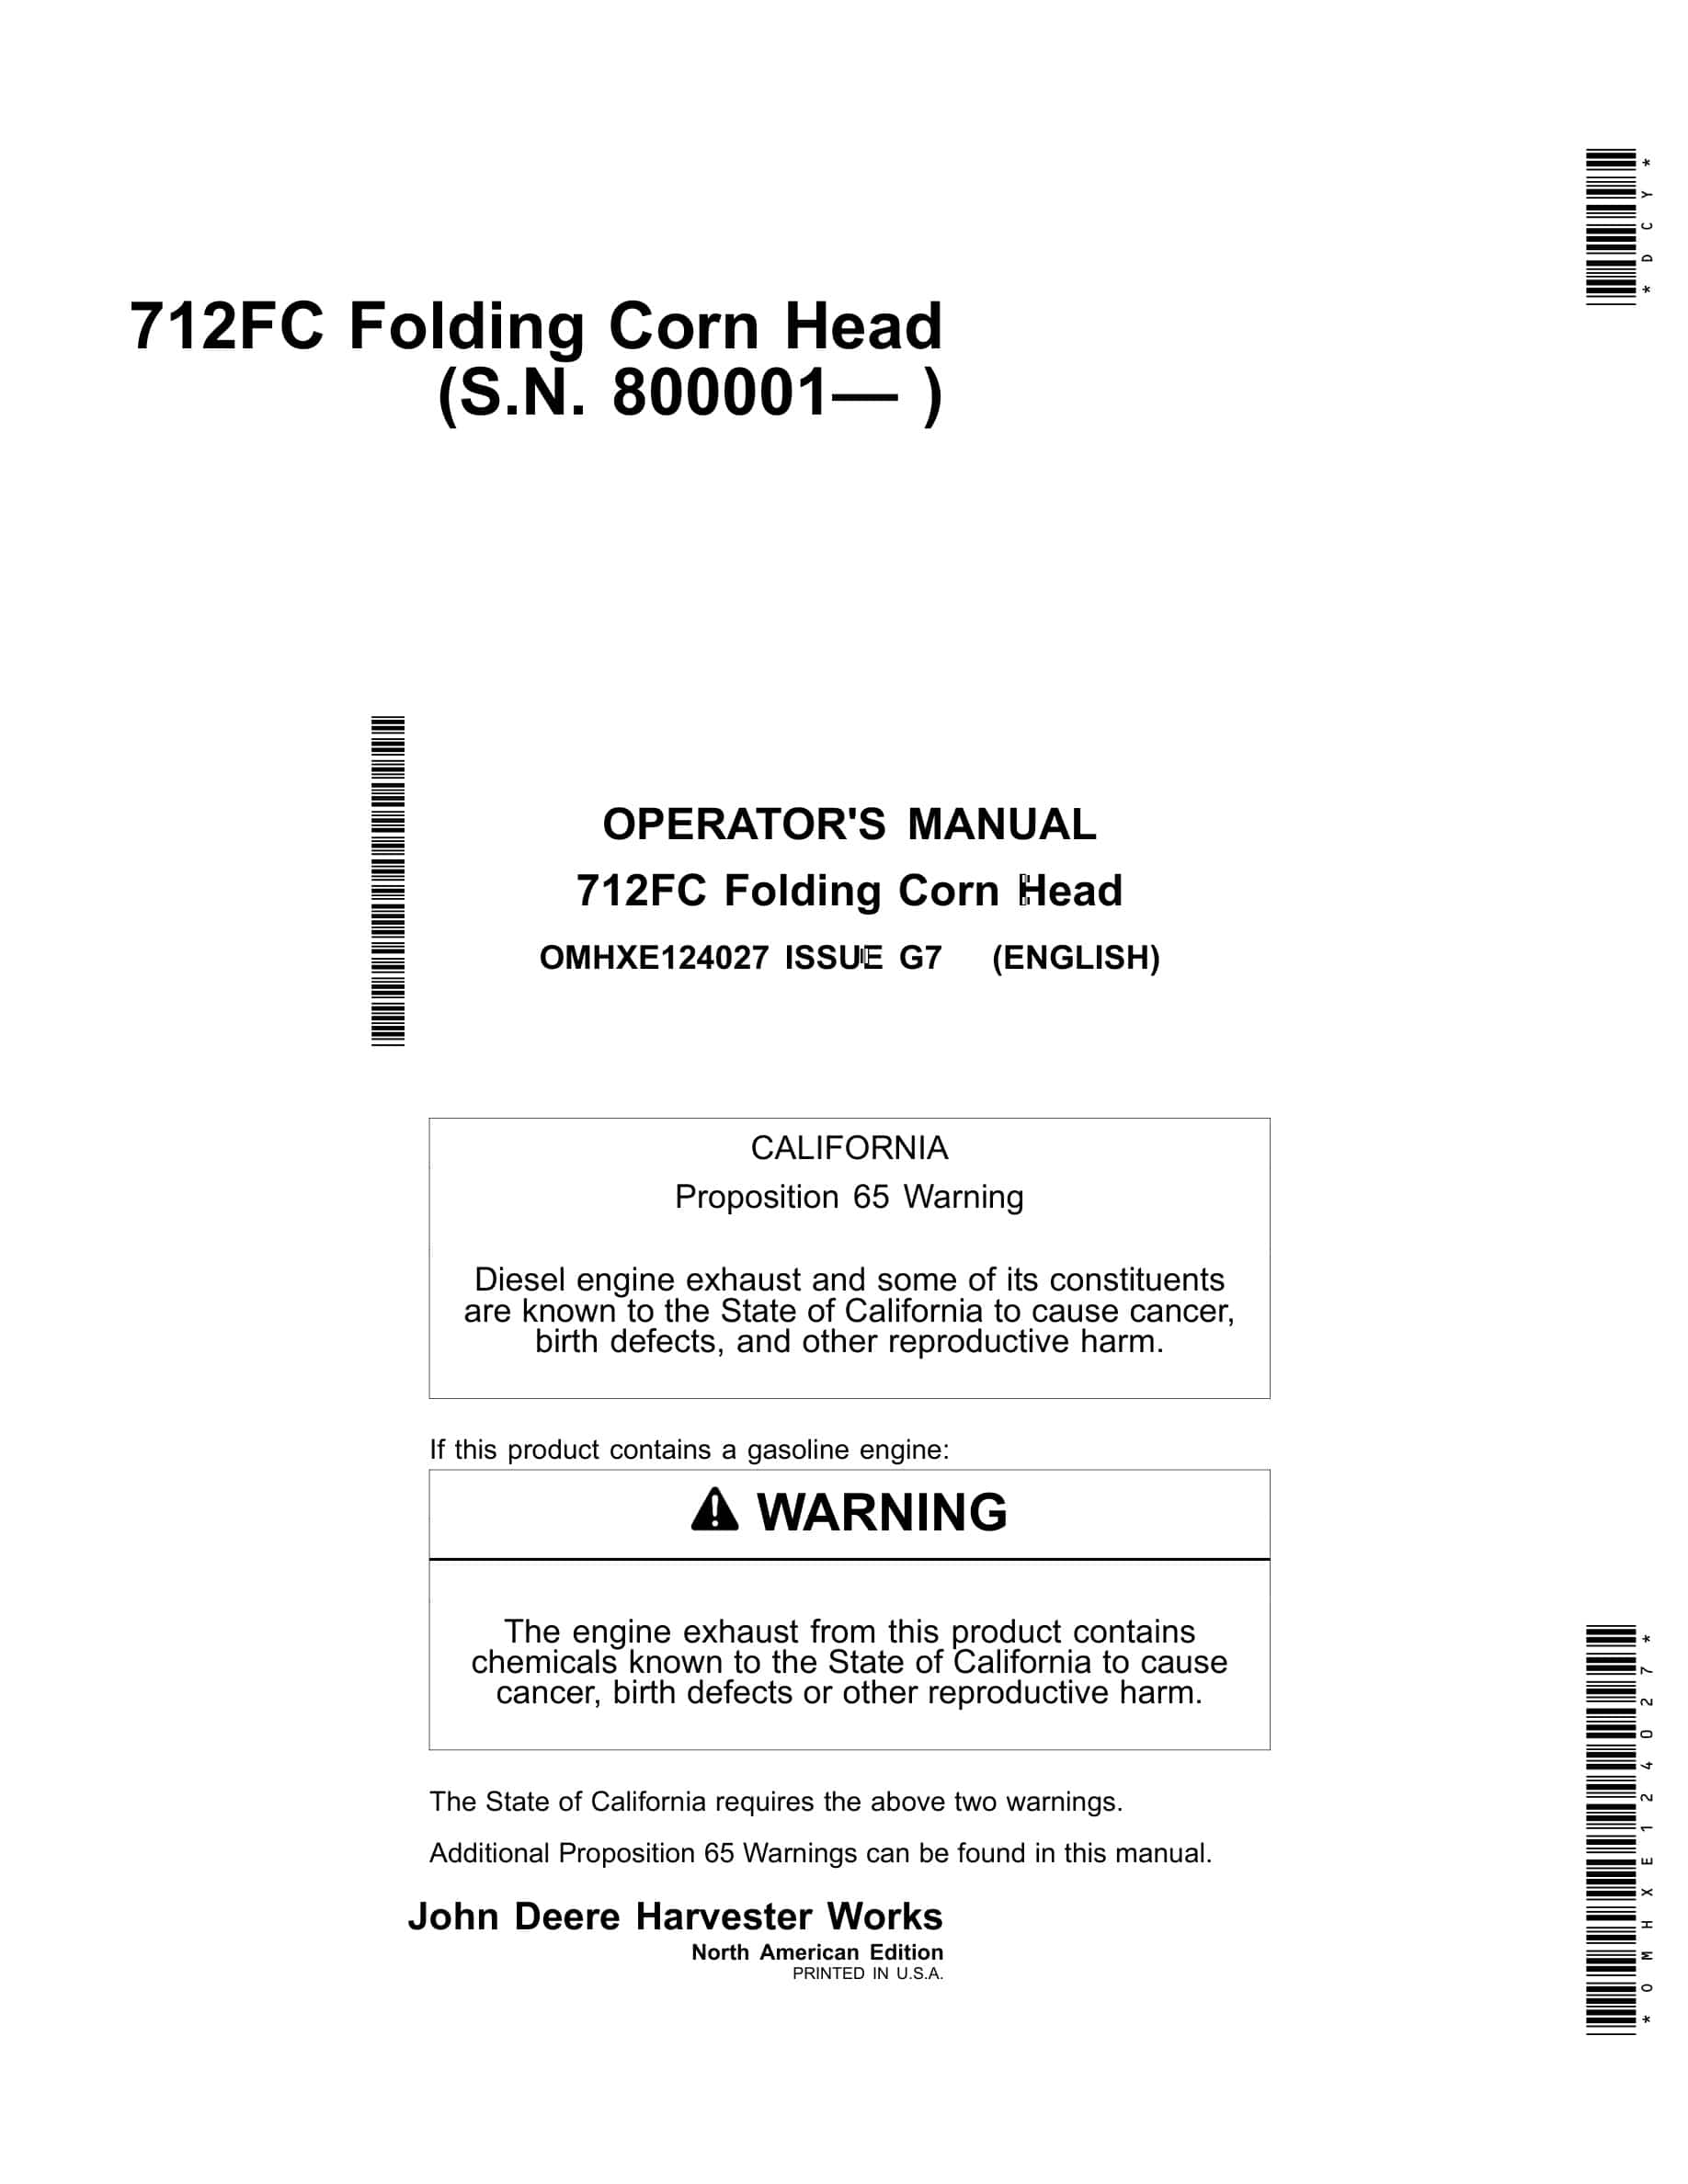 John Deere 712FC Folding Corn Head Operator Manual OMHXE124027-1